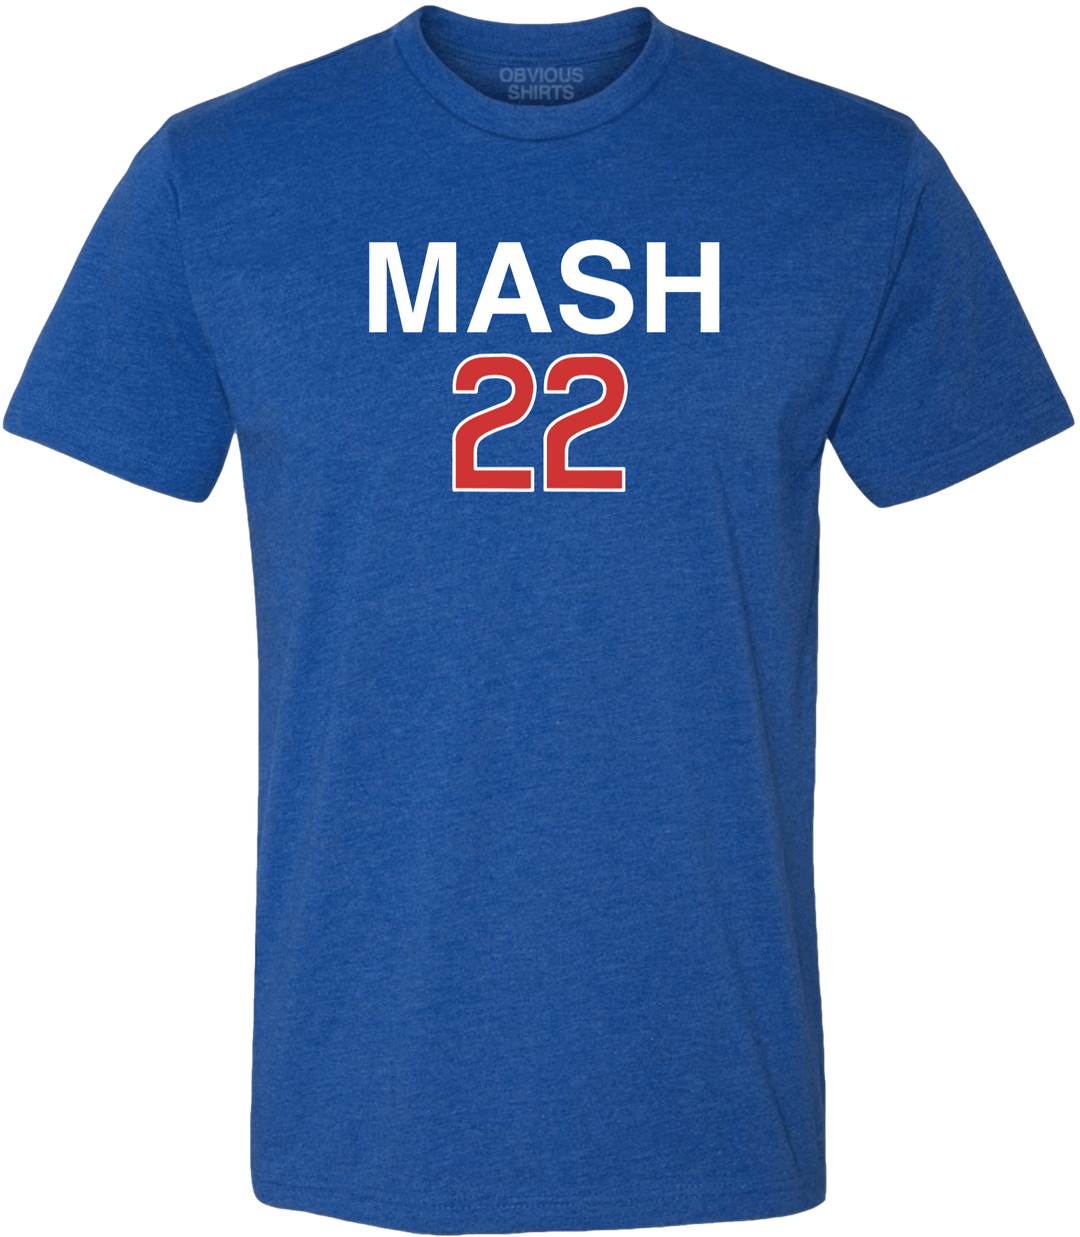 MASH 22 - OBVIOUS SHIRTS